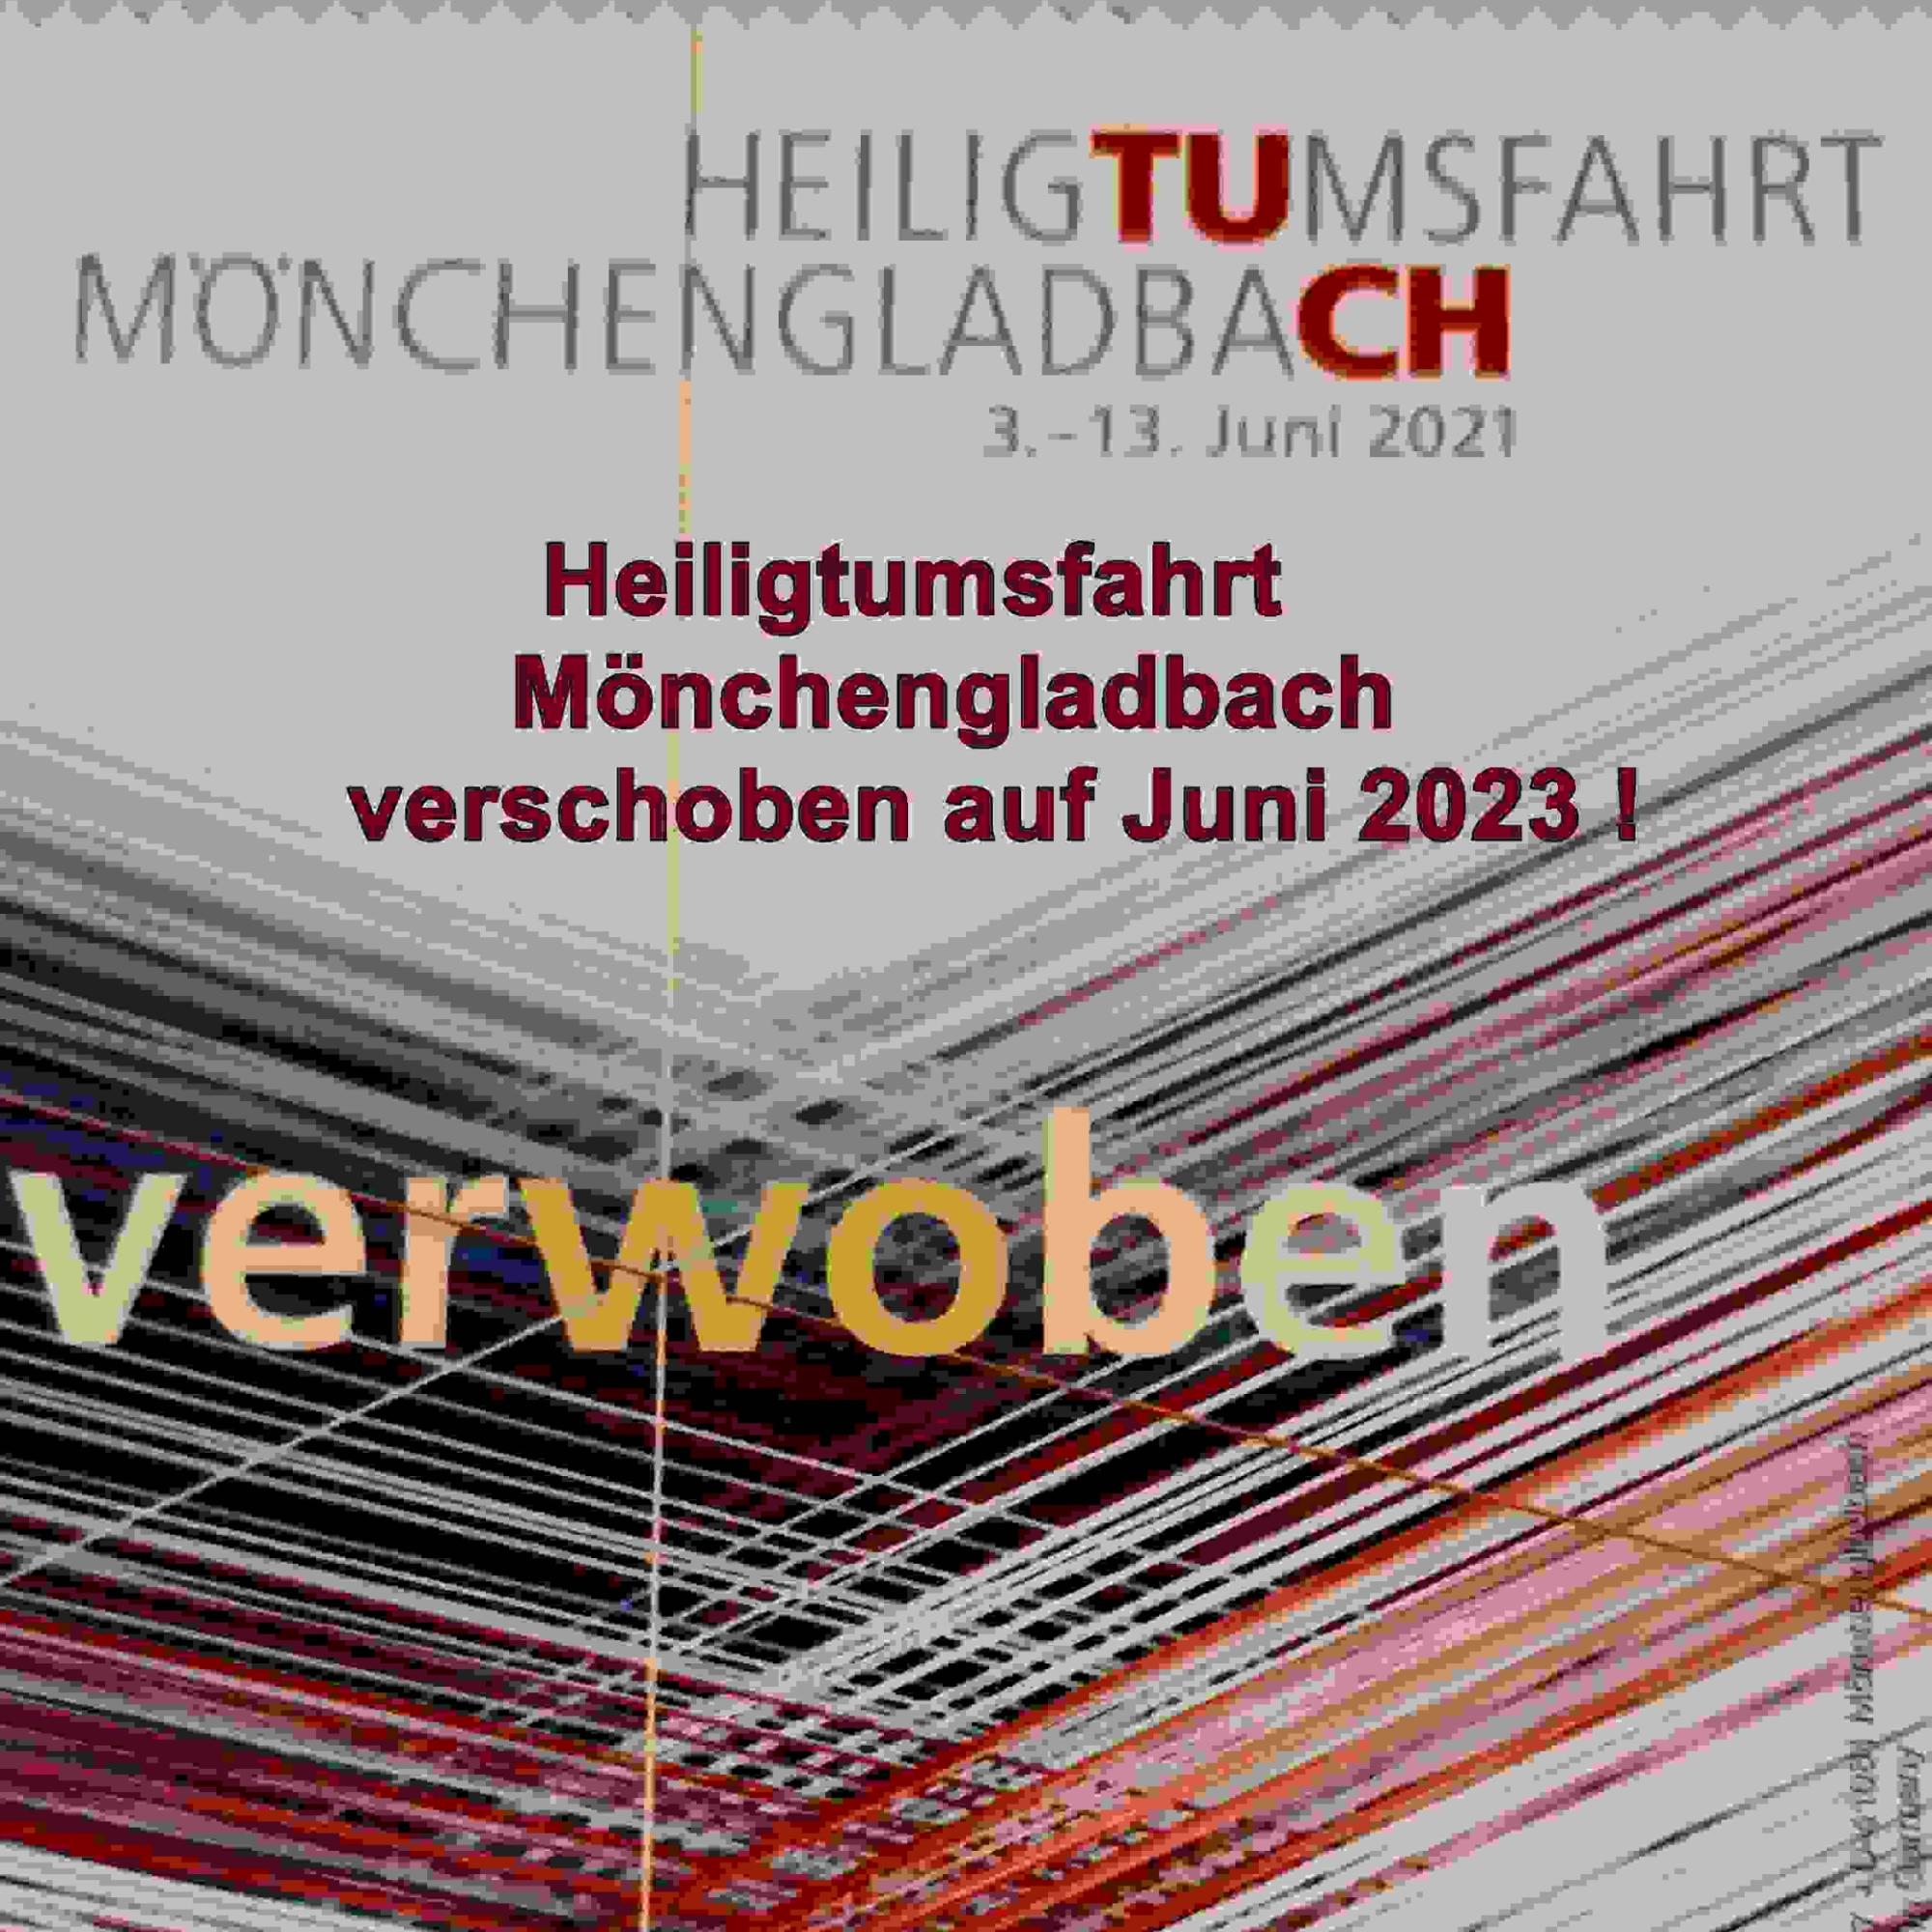 Plakat zur Heiligtumsfahrt Mönchengladbach